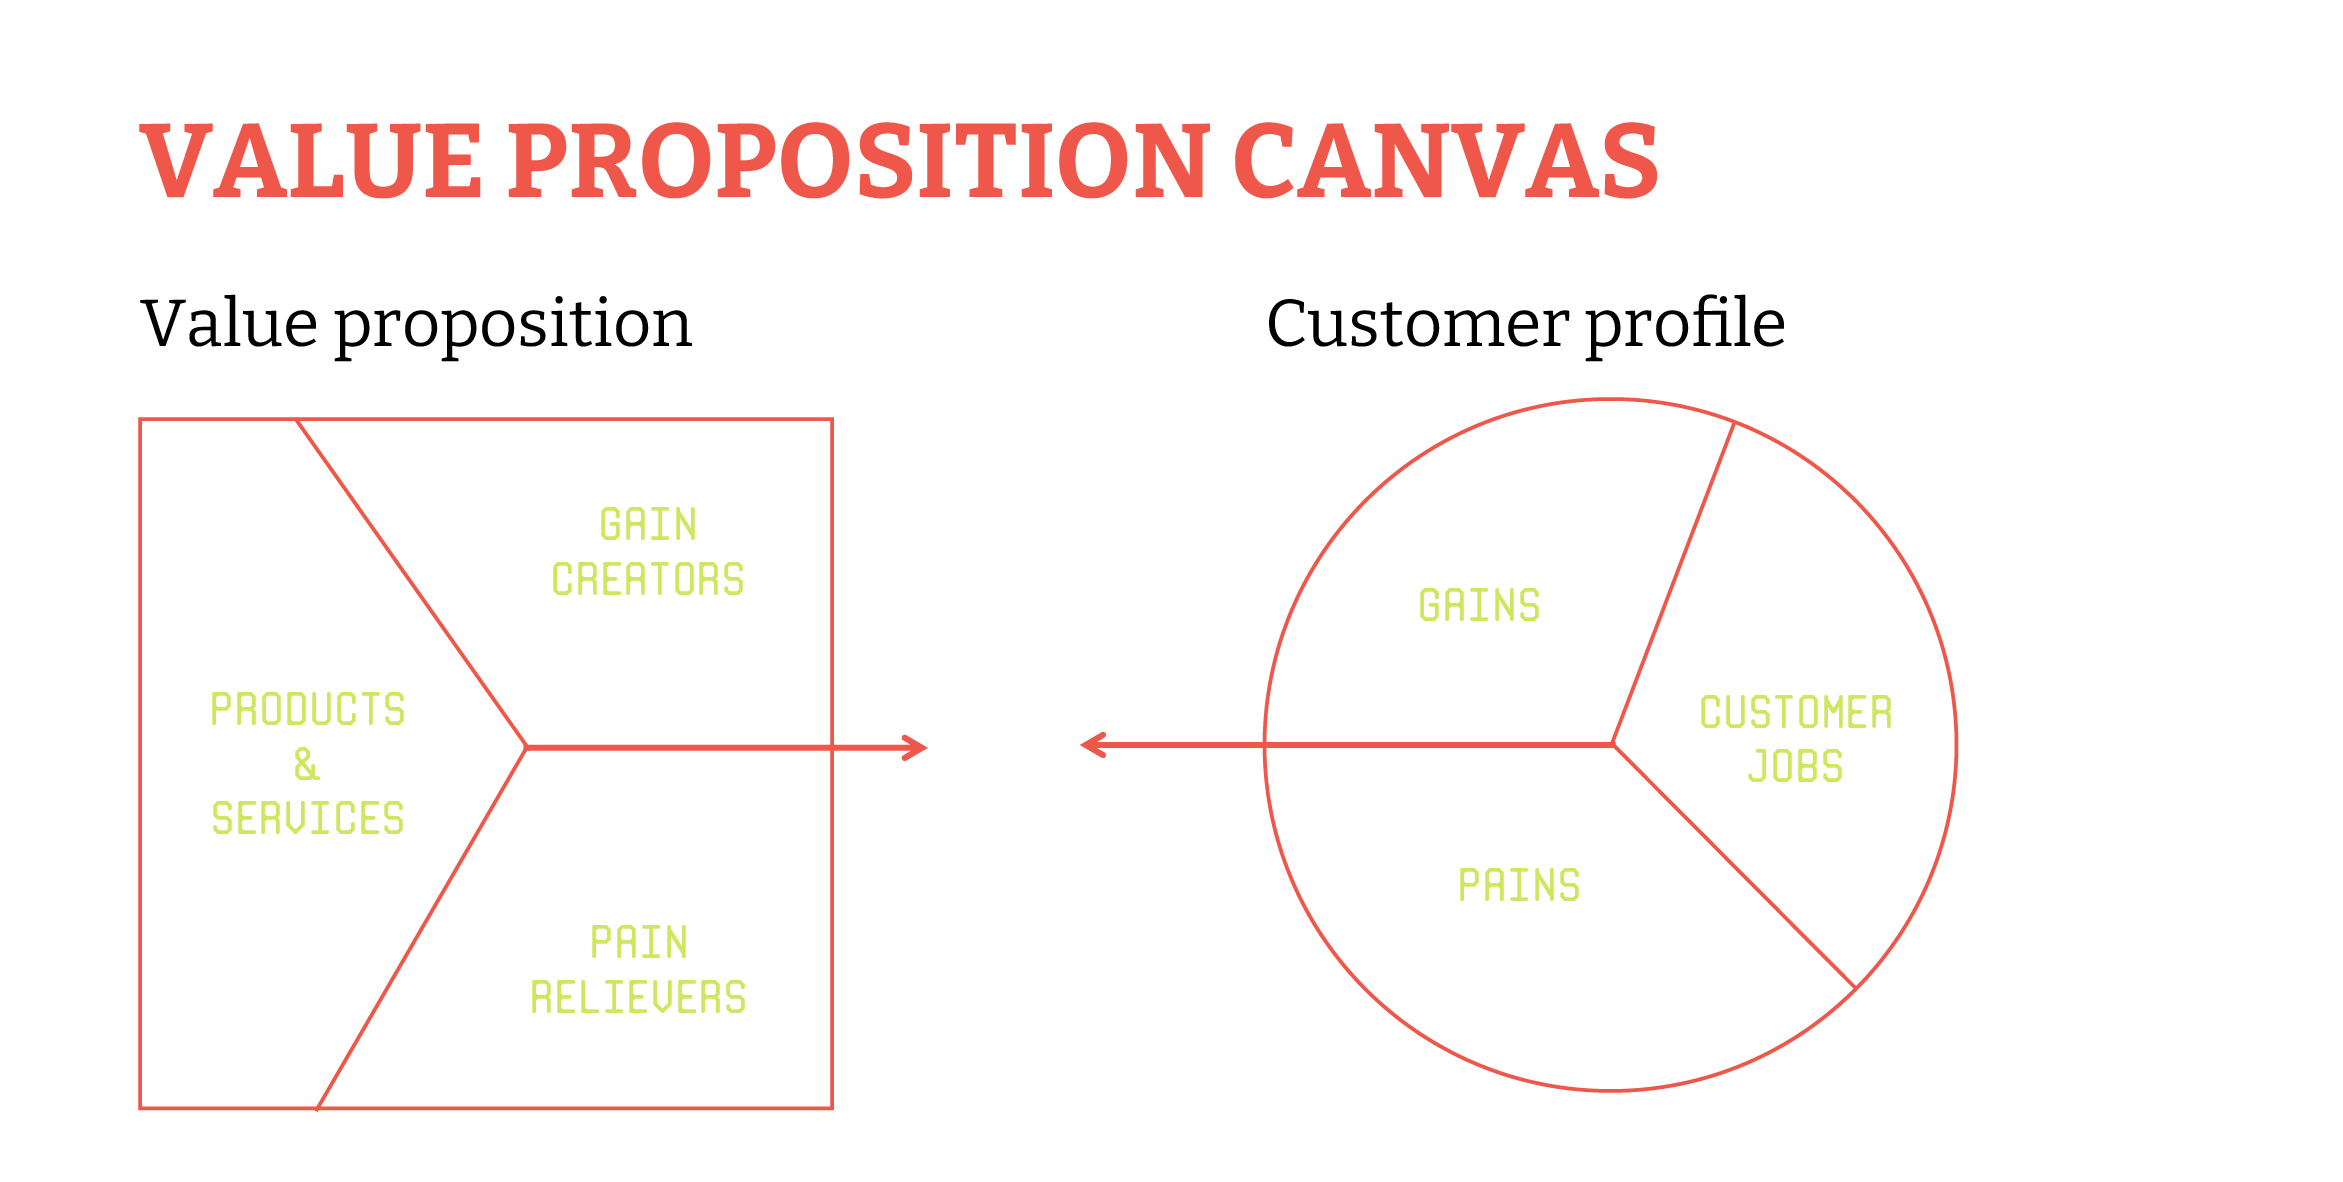 Value proposition canvas